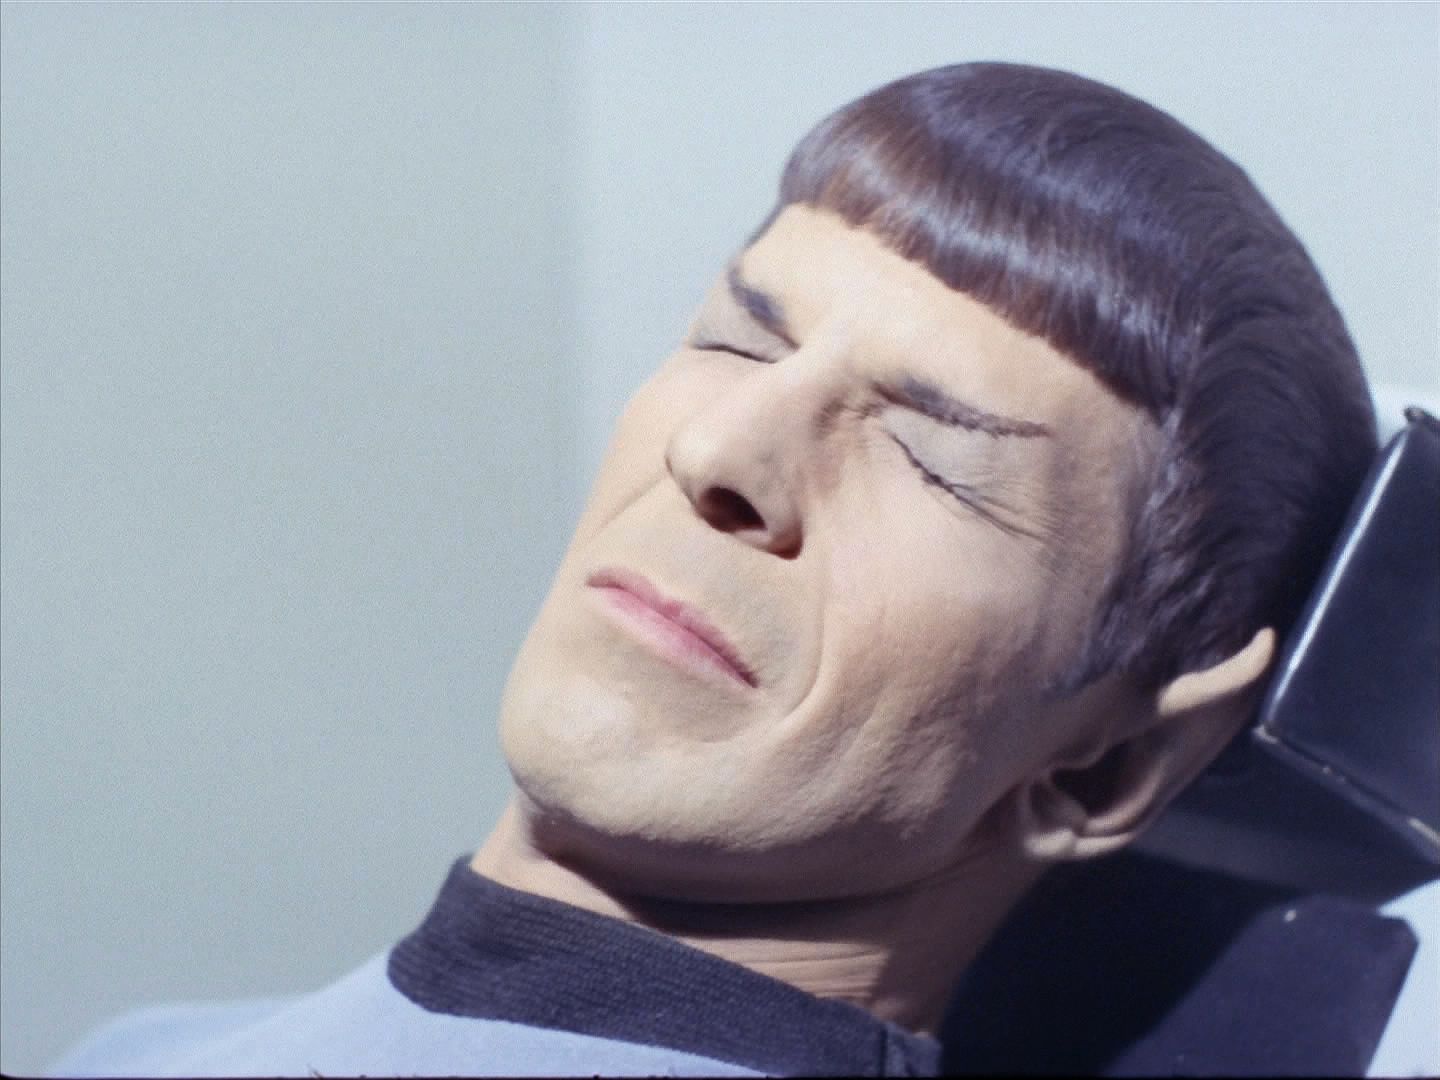 Po neúspěšné snaze parazita zabít přišli na to, že ho zabíjí světlo, a Spock je prvním testovacím subjektem. Světlo vysoké intenzity parazita zničilo, ale Spock přitom oslepl.